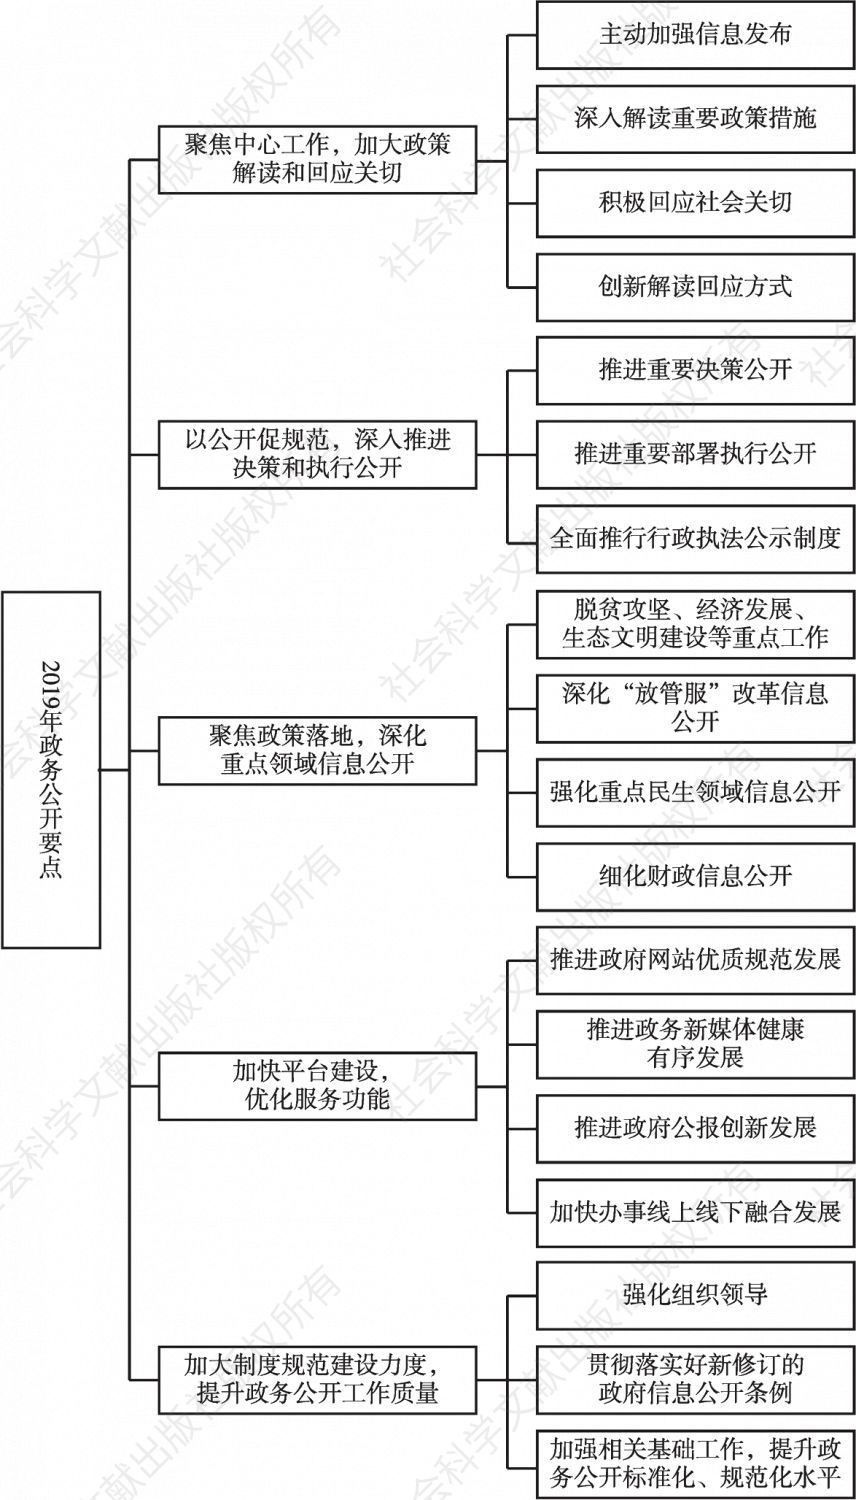 图2 2019年贵州省政务公开工作要点